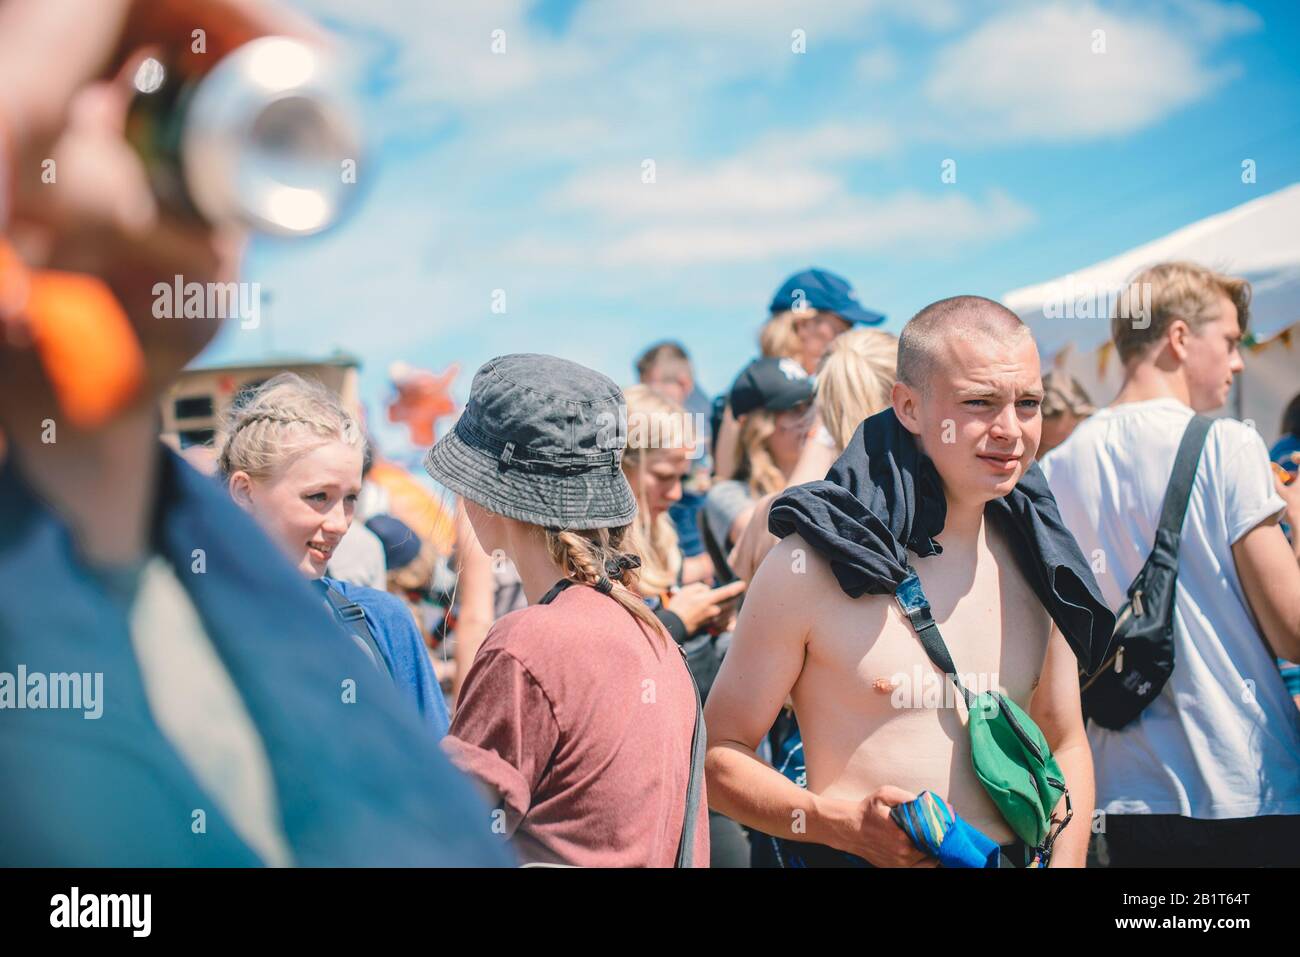 Dream City, Festival de Roskilde 2017 con gente emocionada bebiendo y disfrutando del sol. Roskilde, Dinamarca Foto de stock